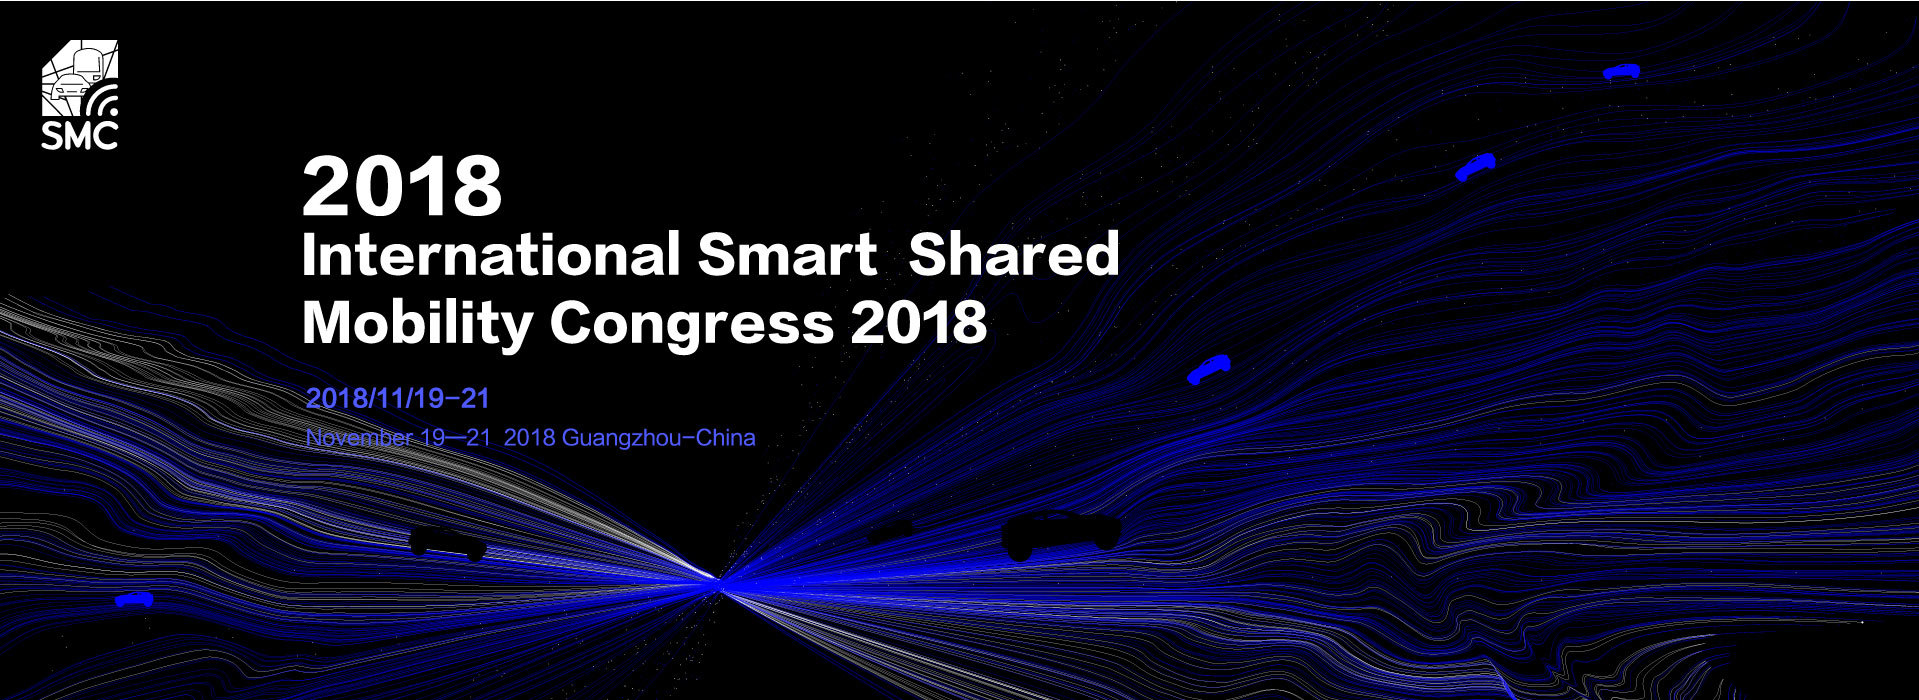 International Smart Shared Mobility Congress 2018